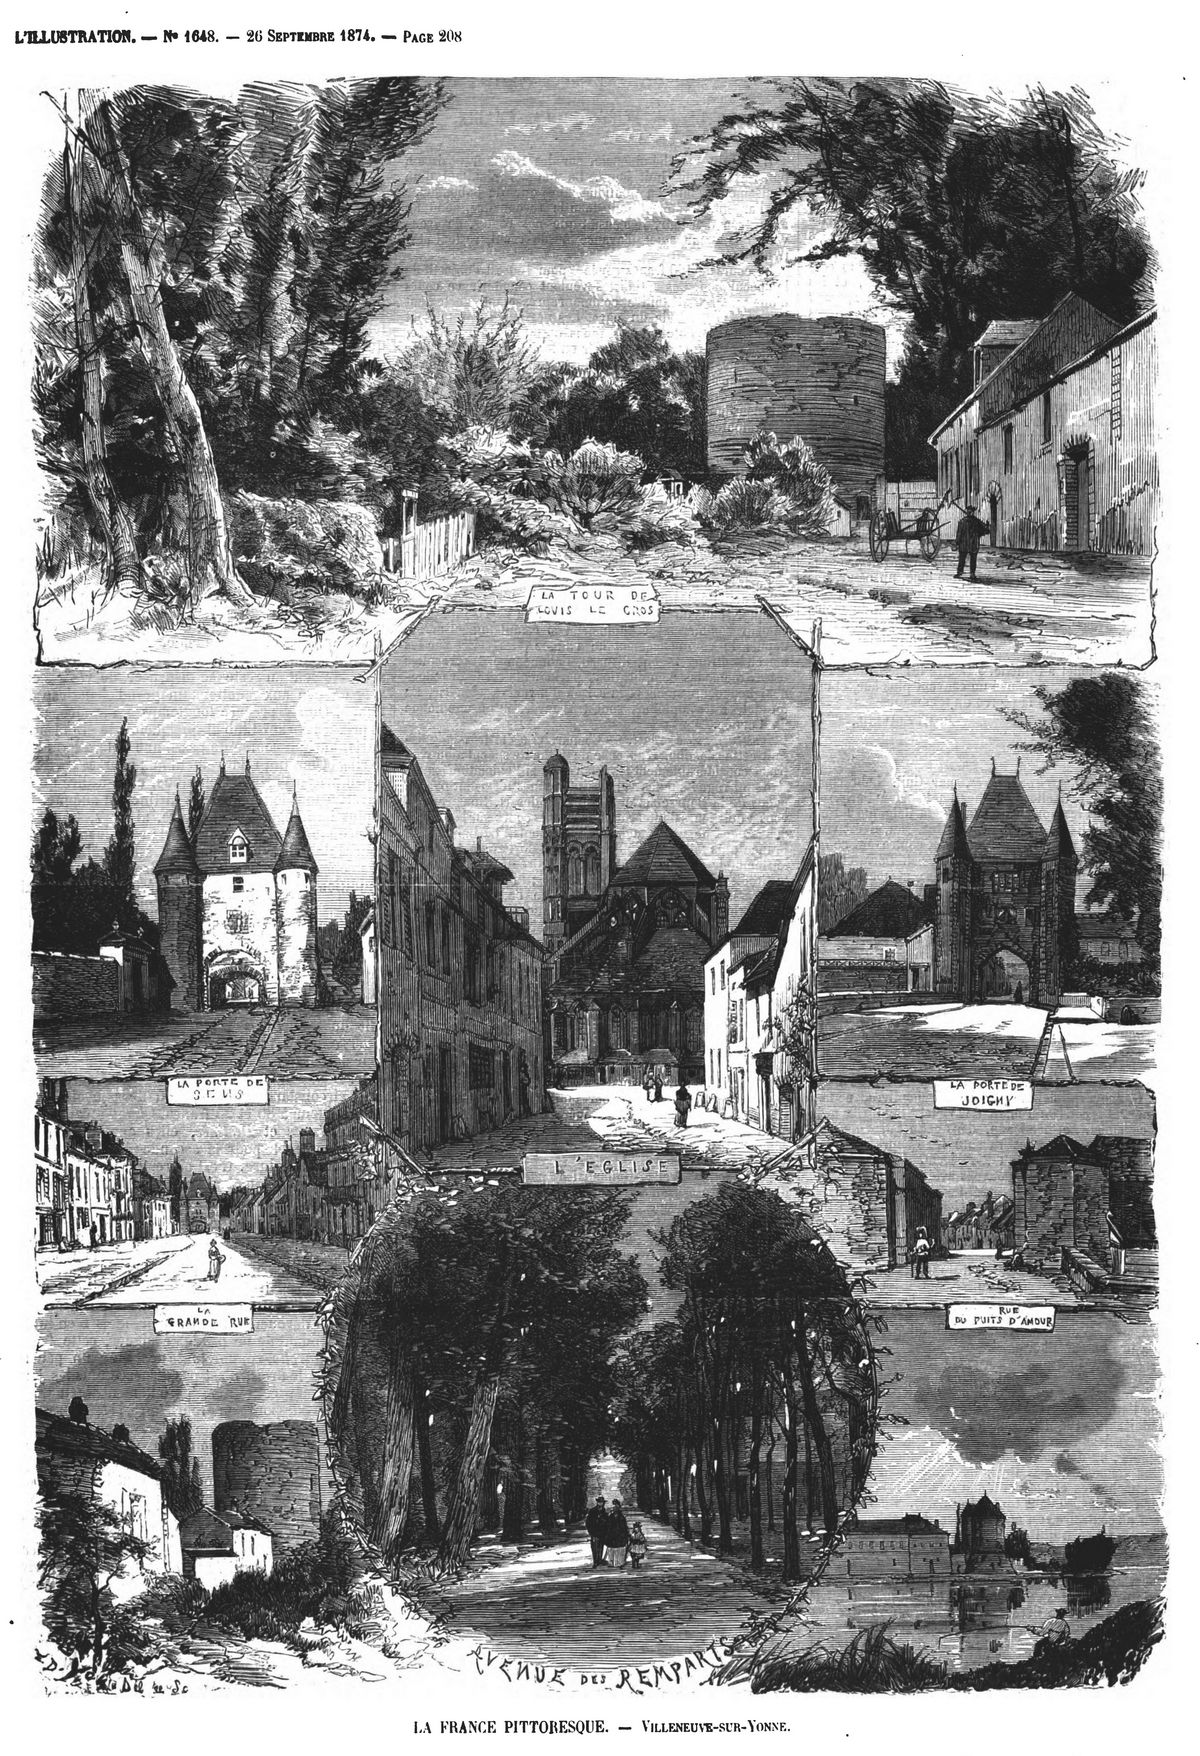 La France pittoresque : Villeneuve-sur-Yonne. Gravure 1874